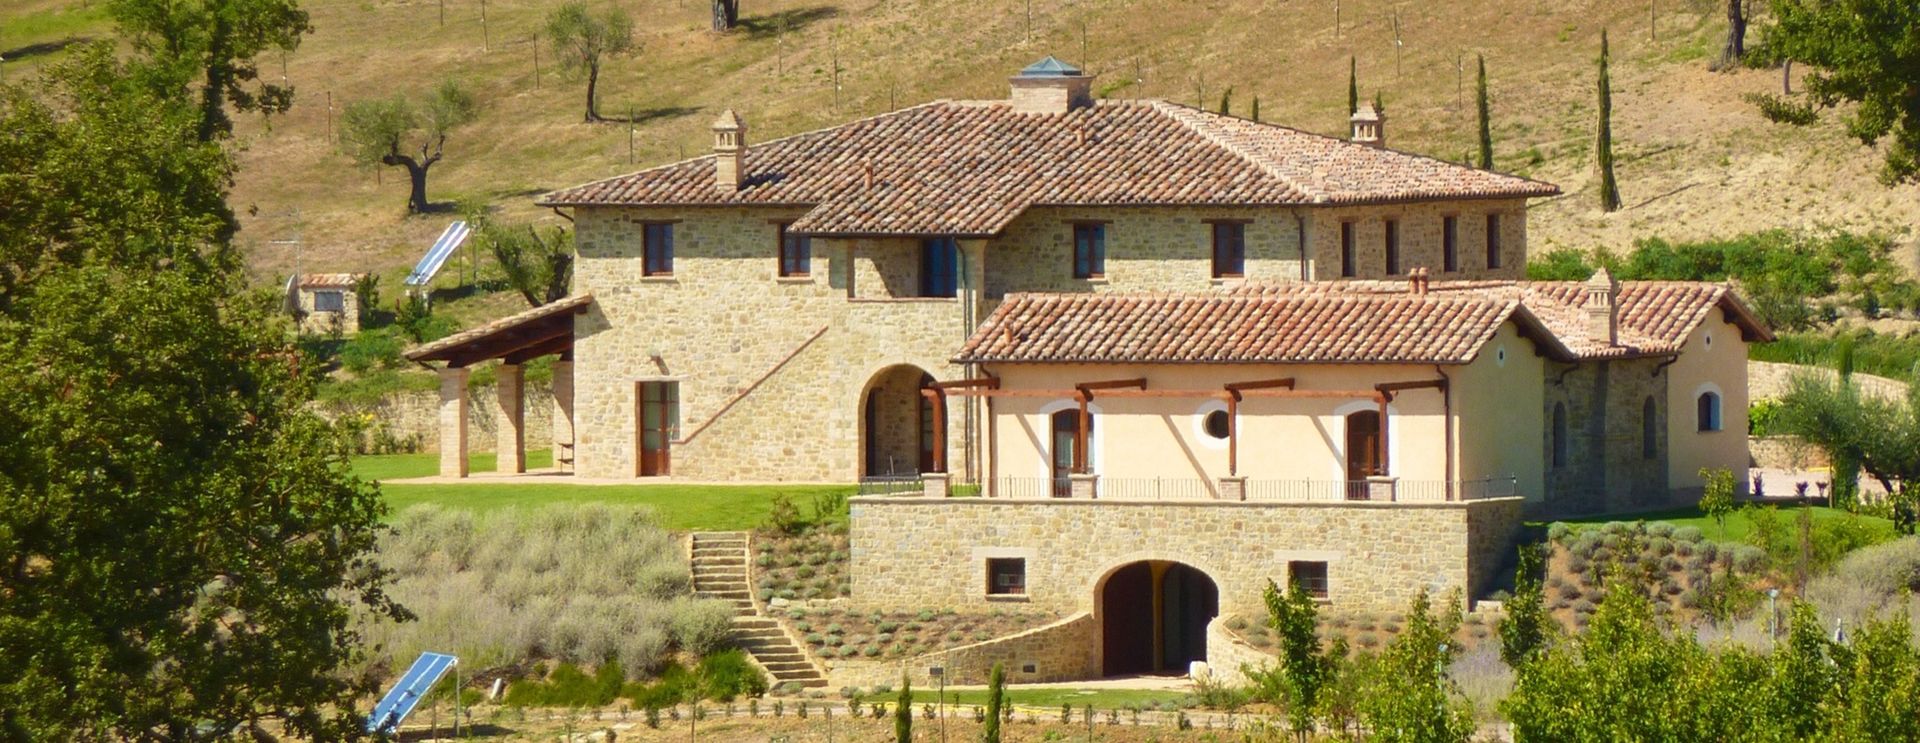 Villa a Poggio Pelliccione (PG), Studio Zaroli Studio Zaroli Country style houses